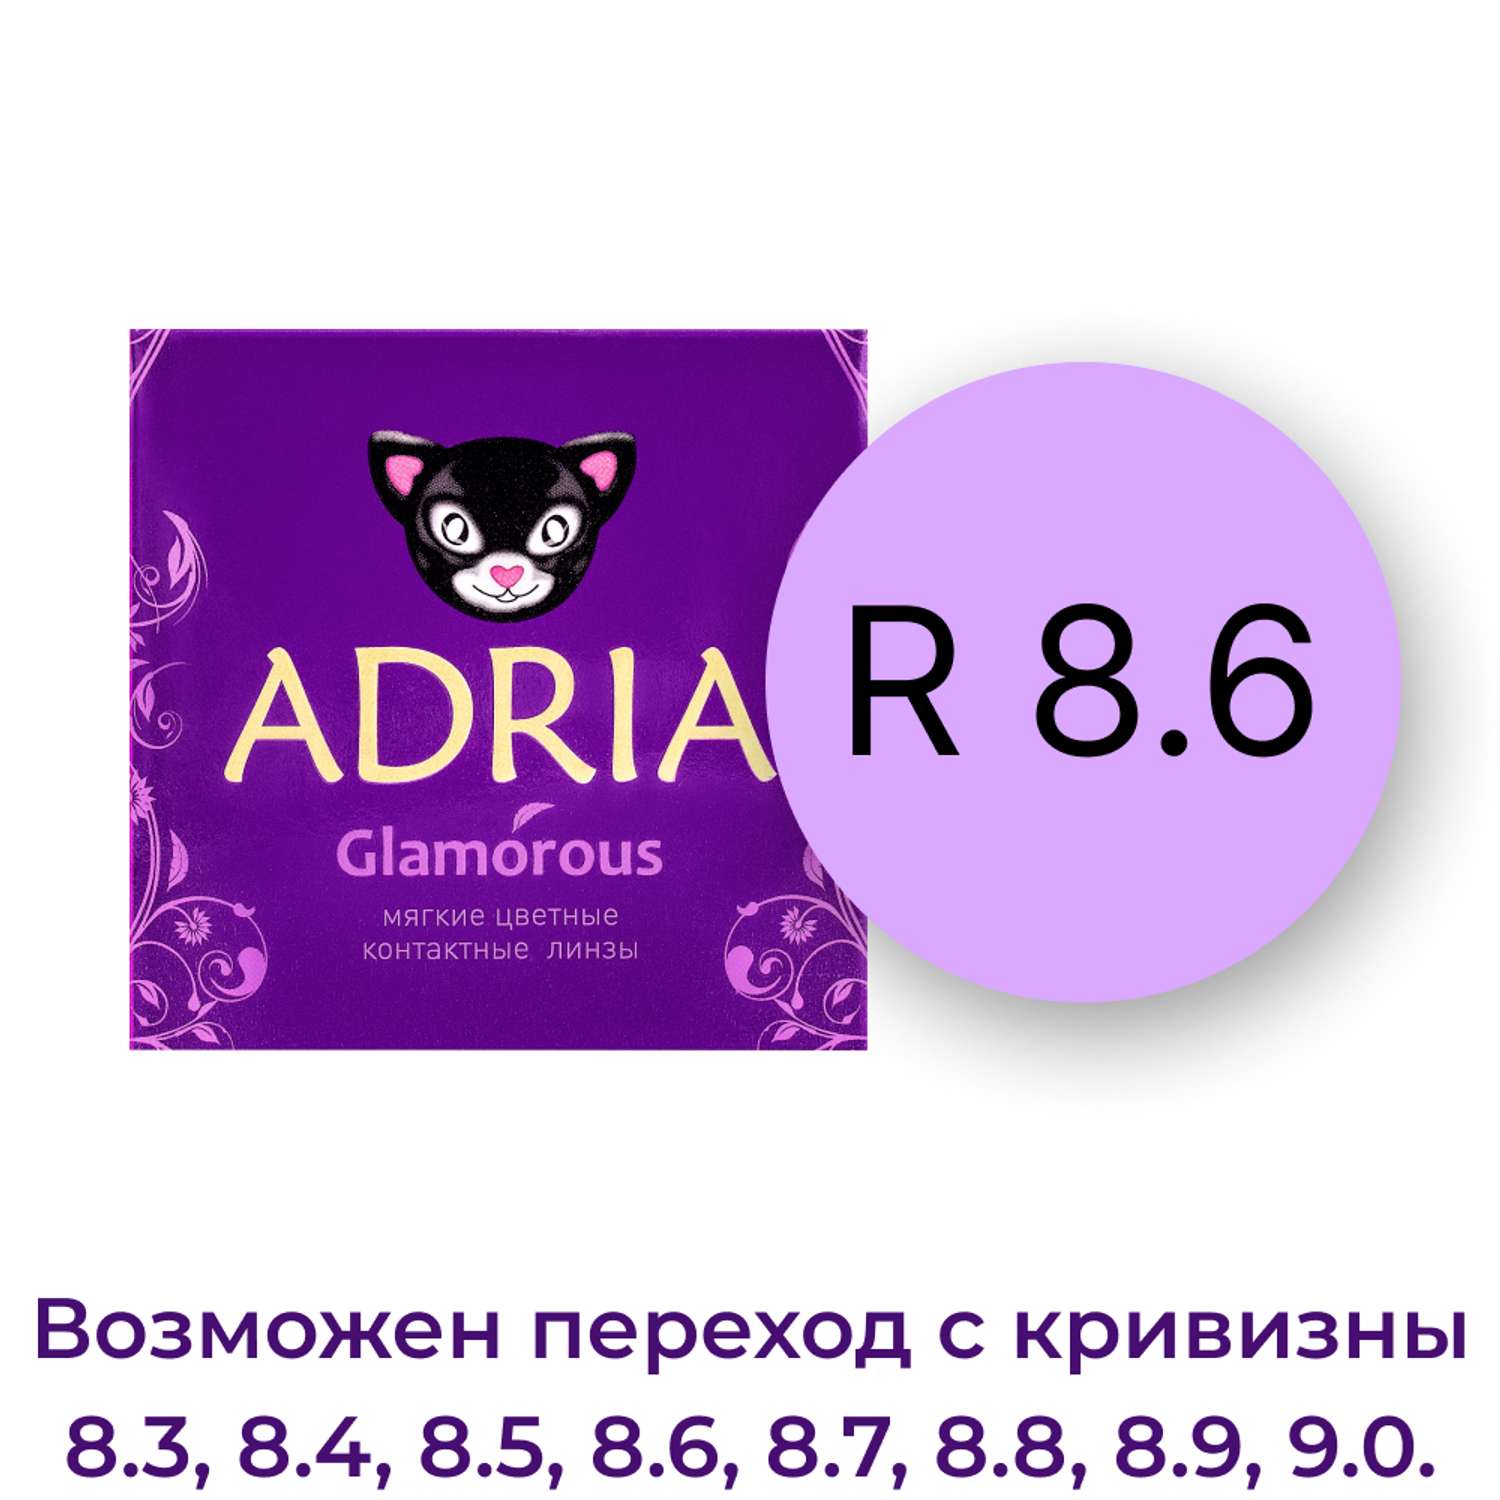 Цветные контактные линзы ADRIA Glamorous 2 линзы R 8.6 Gold -0.00 - фото 4